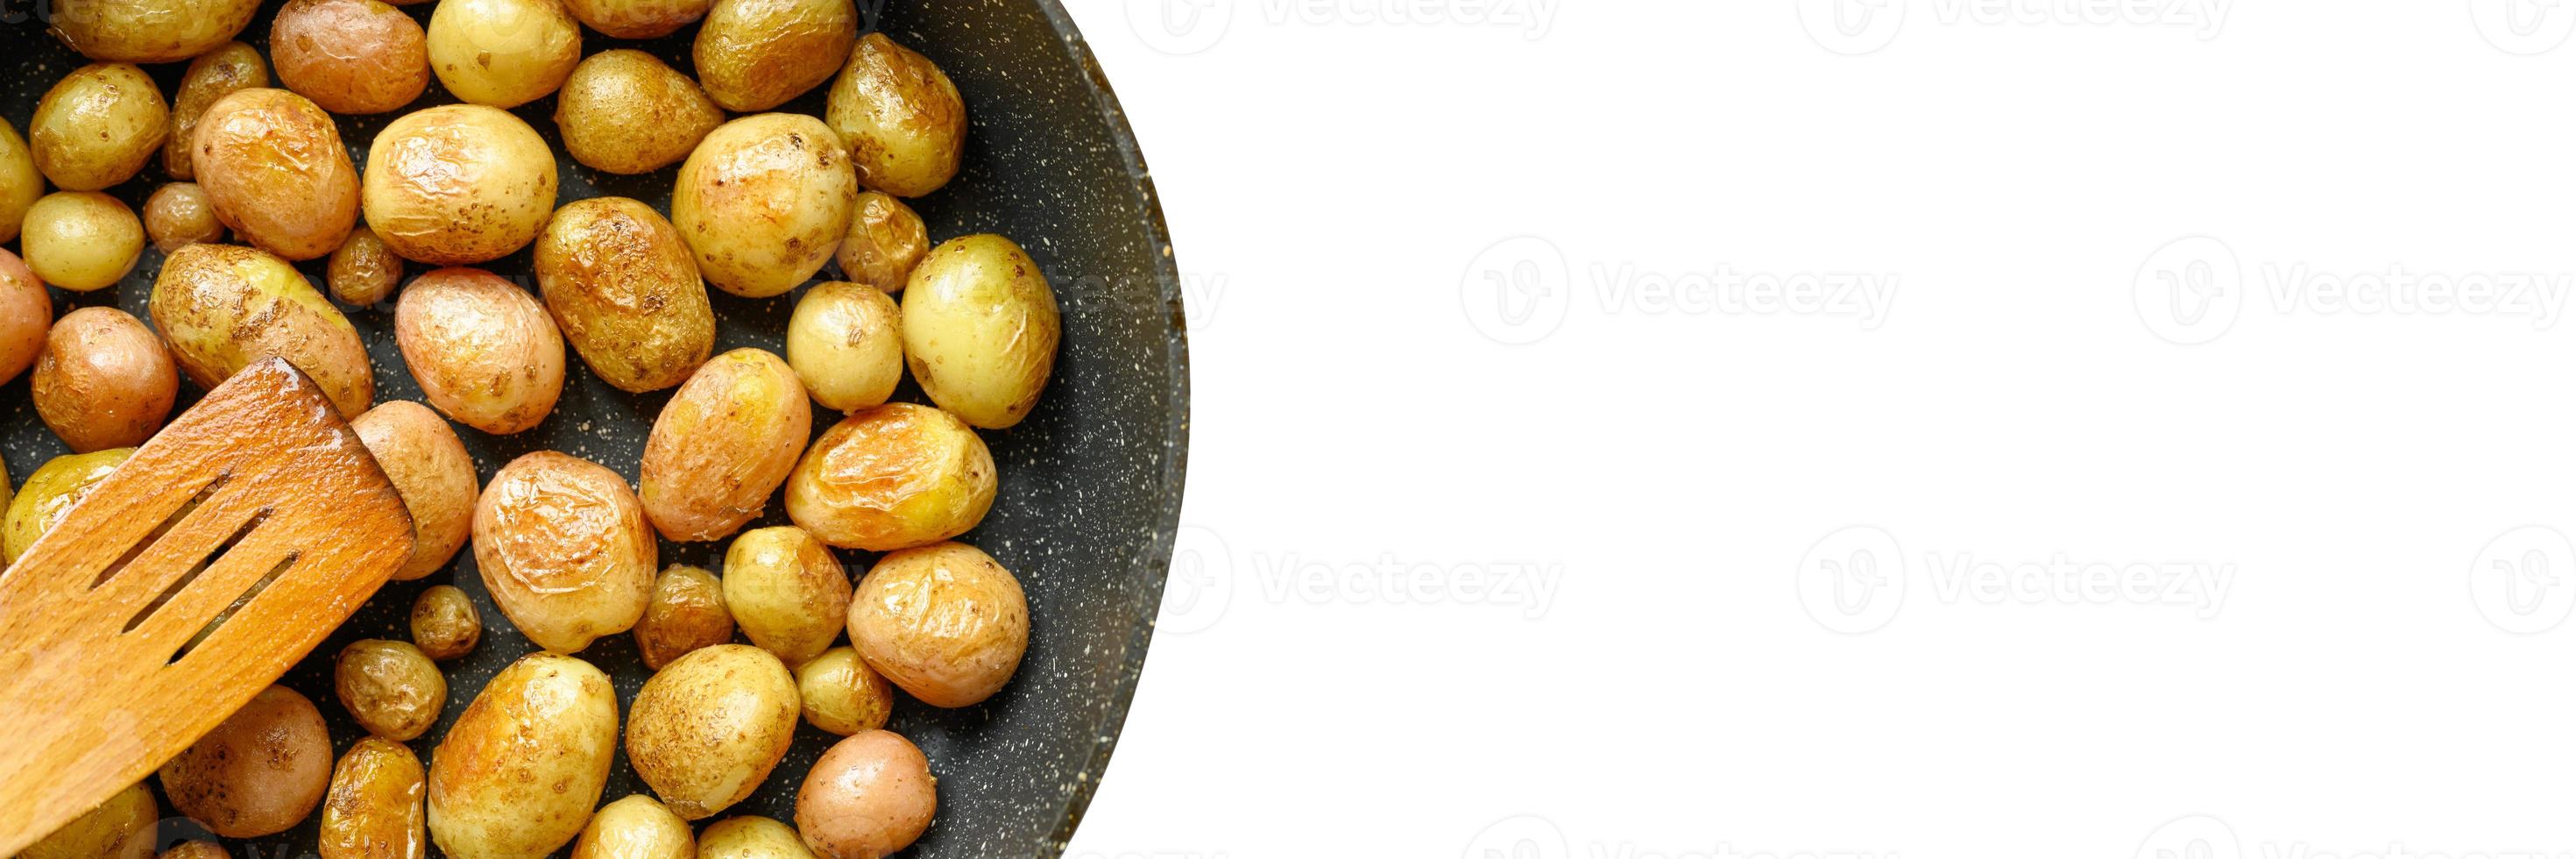 patate dorate al forno con la buccia foto